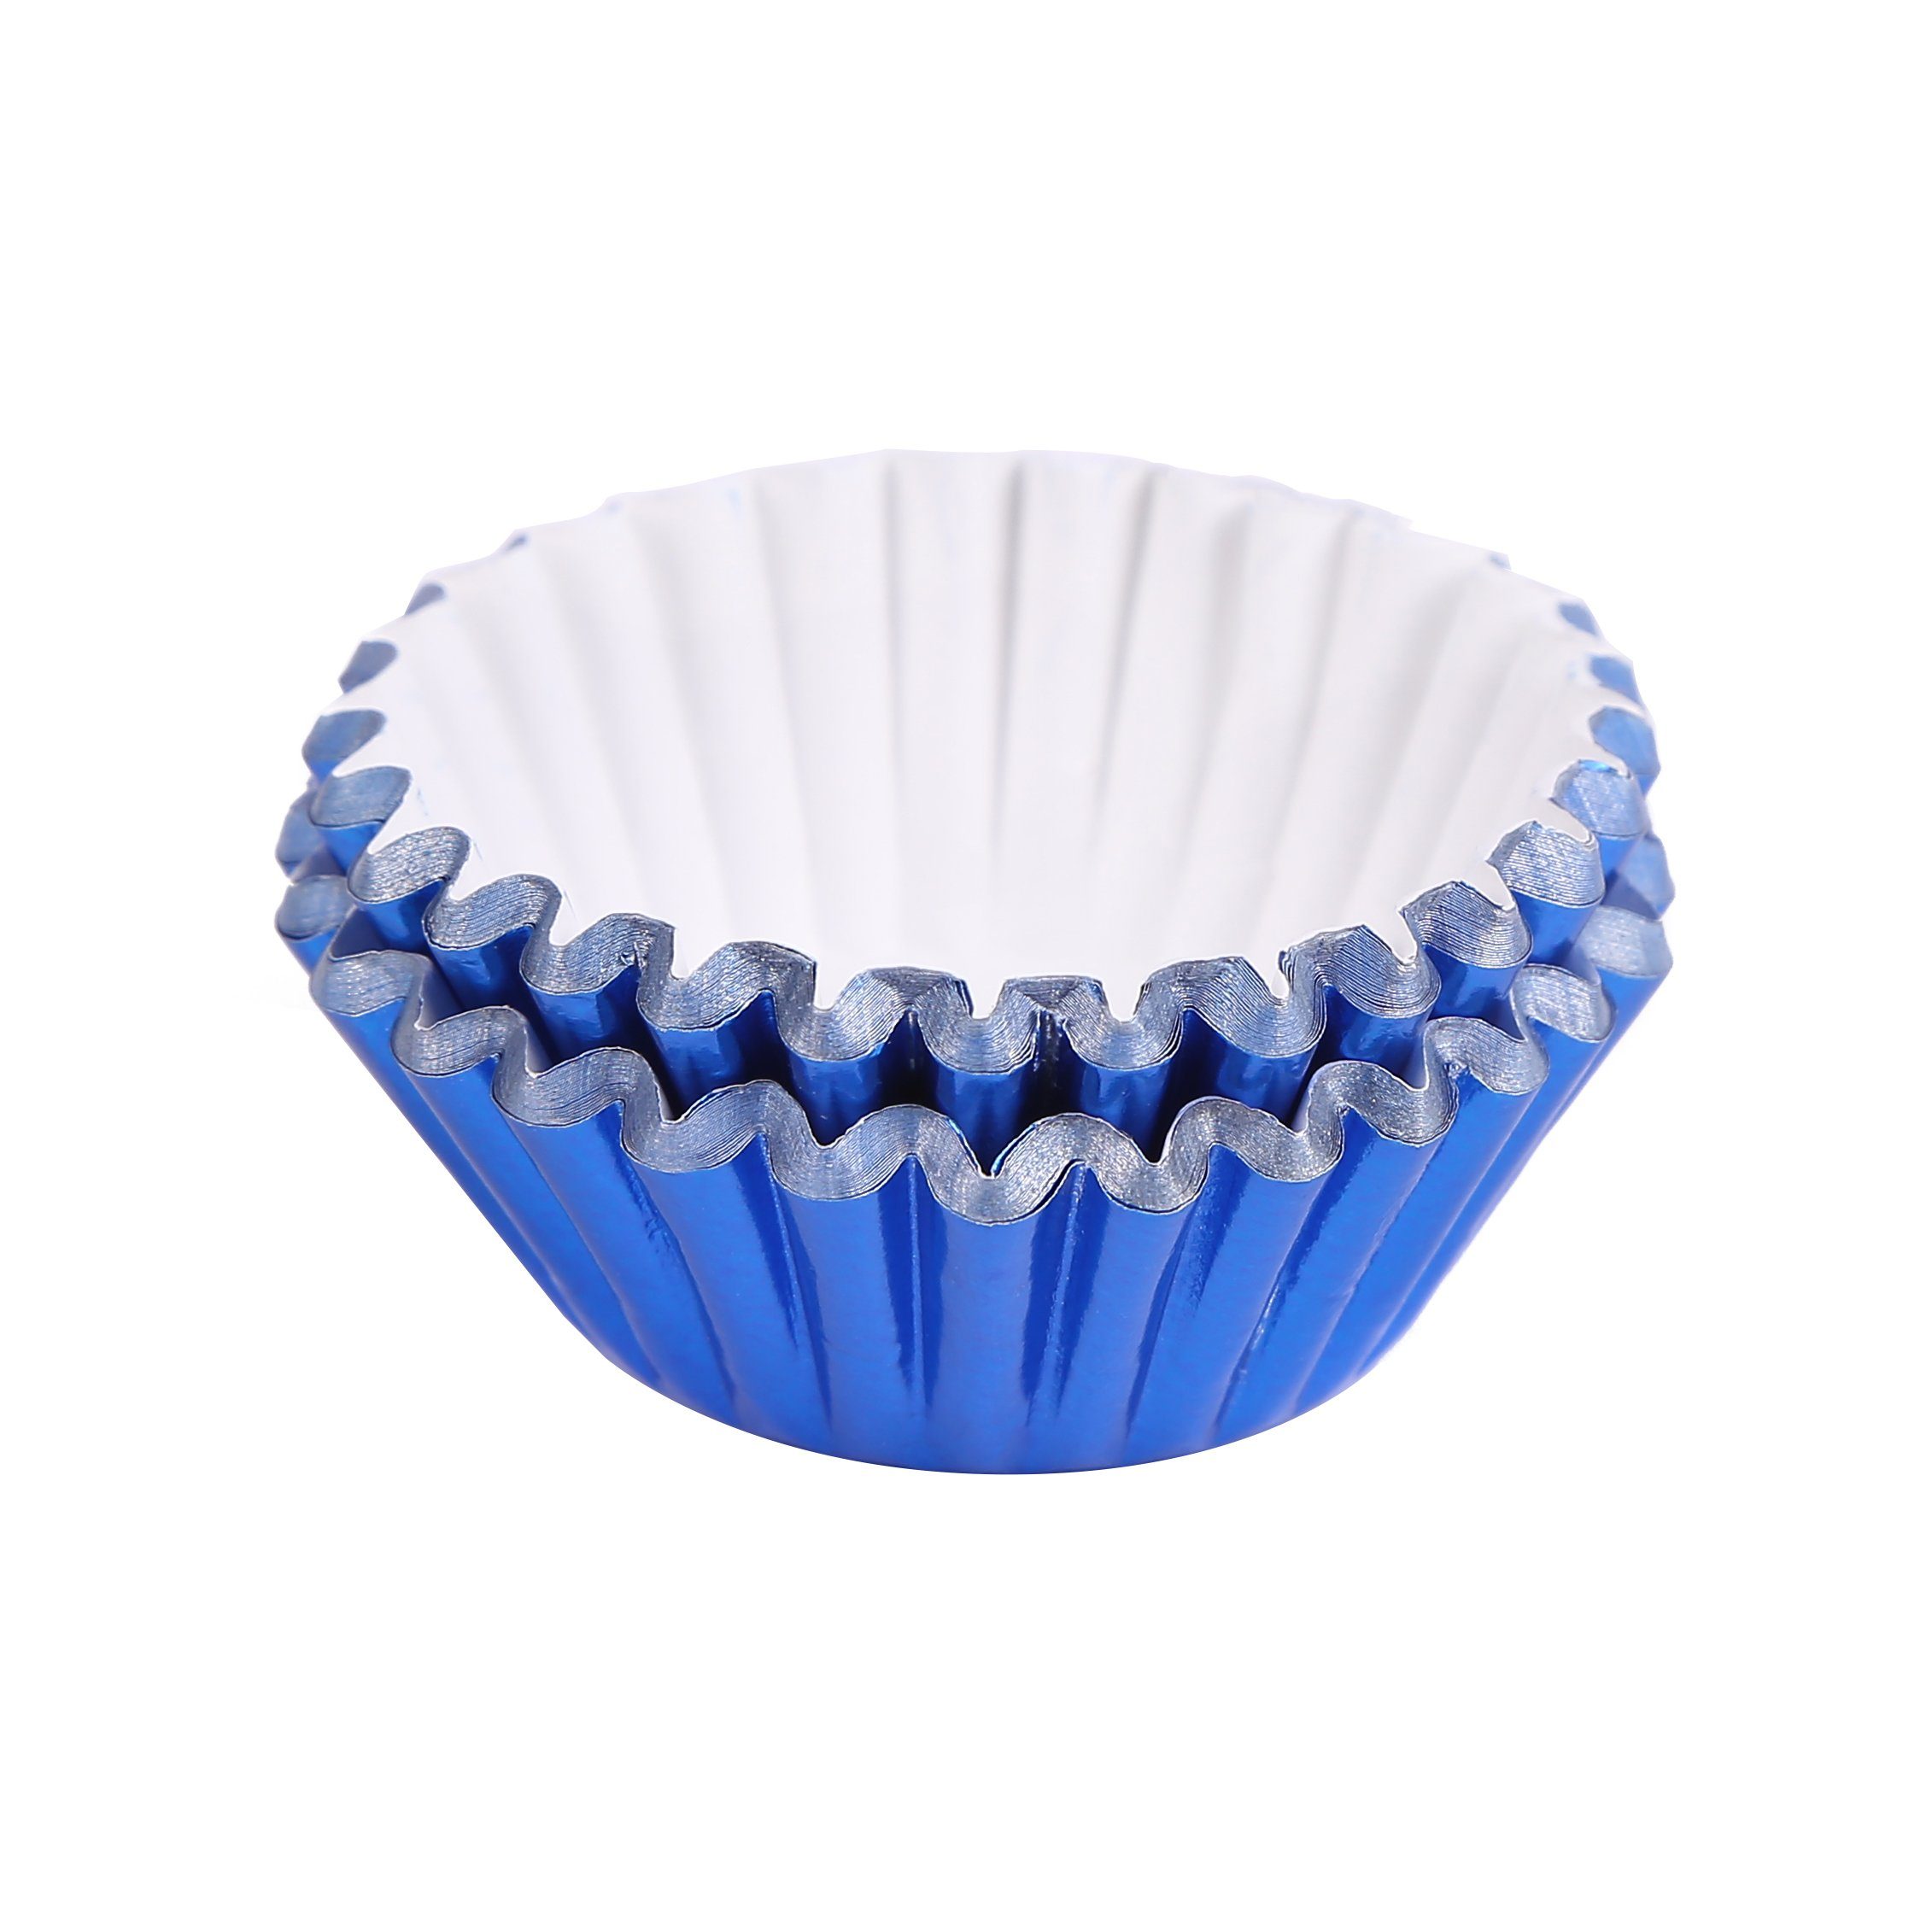 Miss Bakery's House Muffinform Mini Muffinförmchen folienbeschichtet, (Blau 120-tlg), kleine Metallic-Papierbackförmchen für Mini-Cupcakes und Minimuffins